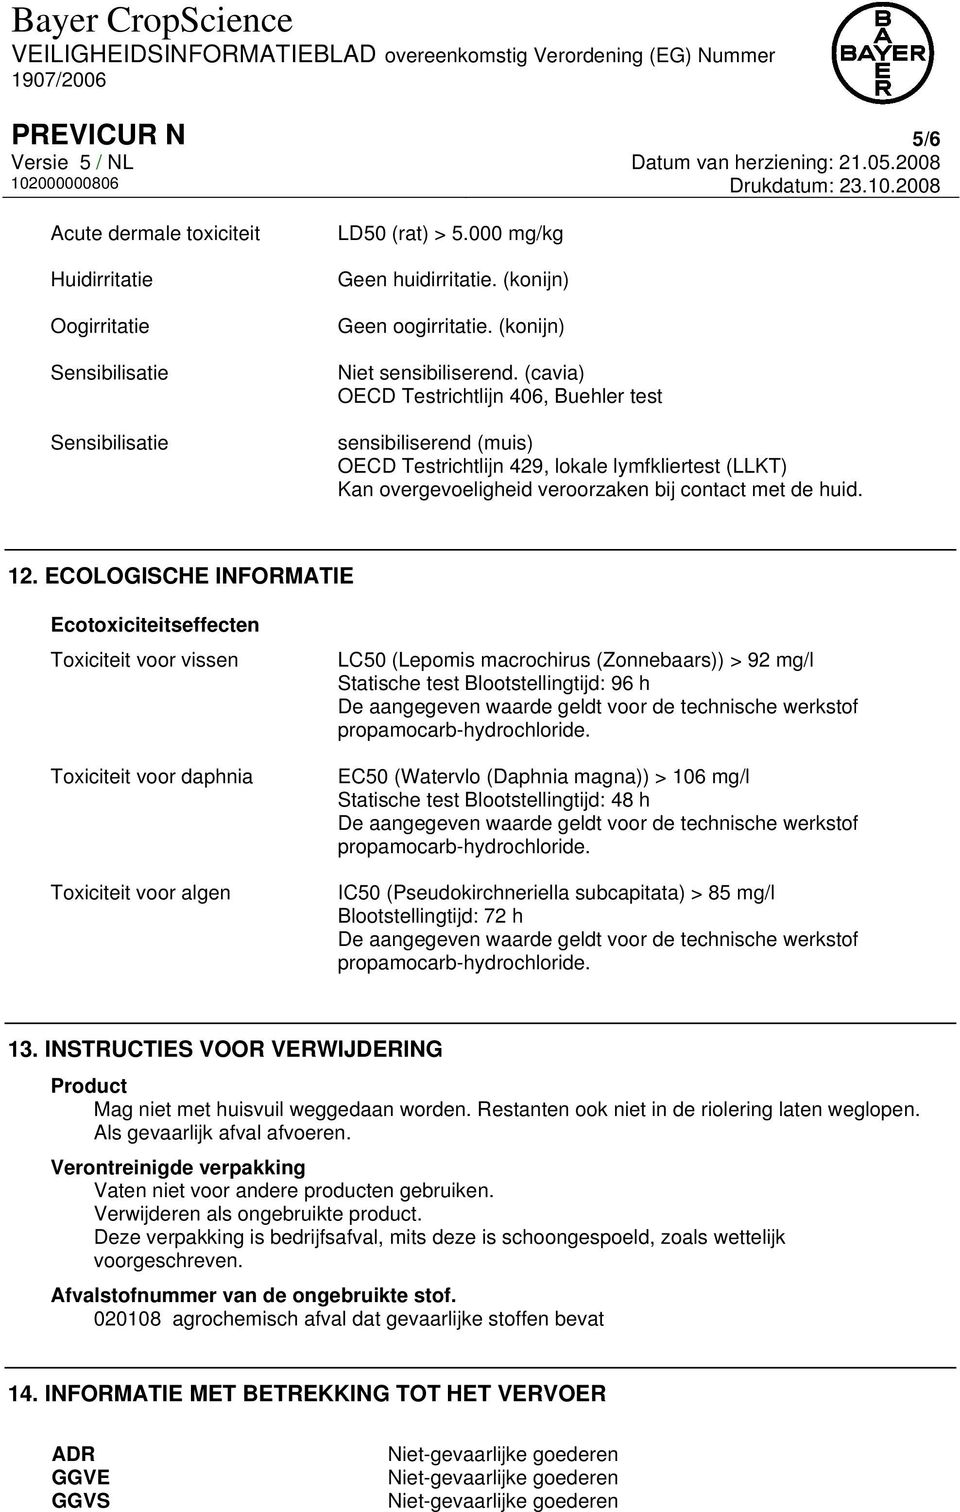 ECOLOGISCHE INFORMATIE Ecotoxiciteitseffecten Toxiciteit voor vissen Toxiciteit voor daphnia Toxiciteit voor algen LC50 (Lepomis macrochirus (Zonnebaars)) > 92 mg/l Statische test Blootstellingtijd: